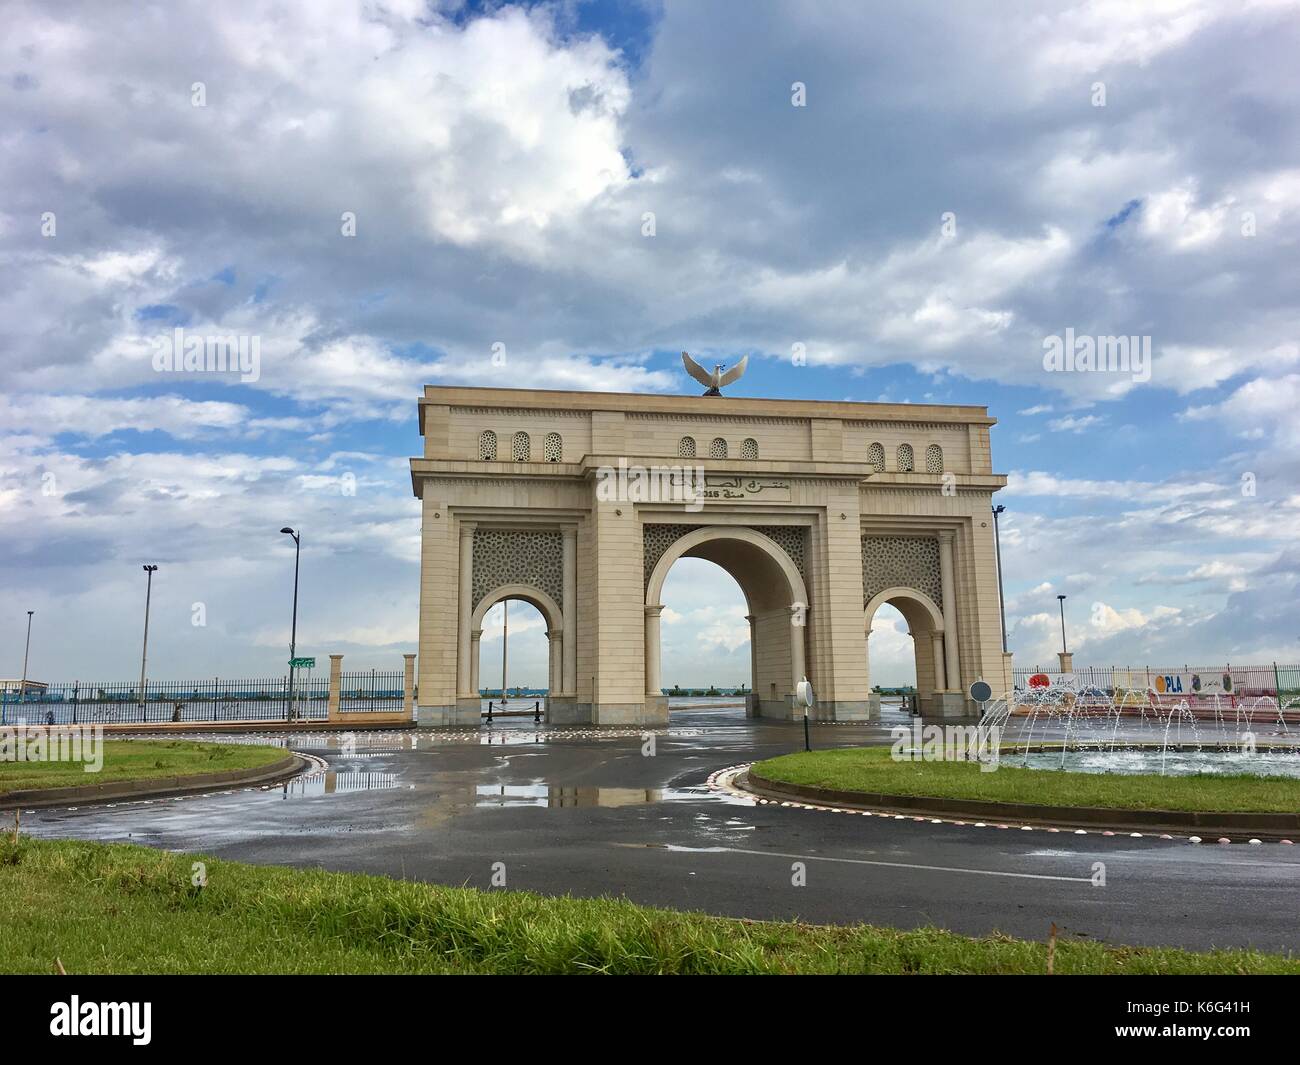 Sablette cancello in Algeri costruito 2015.il gate viene campionato come simbolo di gloria francese arco di trionfo Architecture di Parigi.gate si trova in riva al mare a. Foto Stock